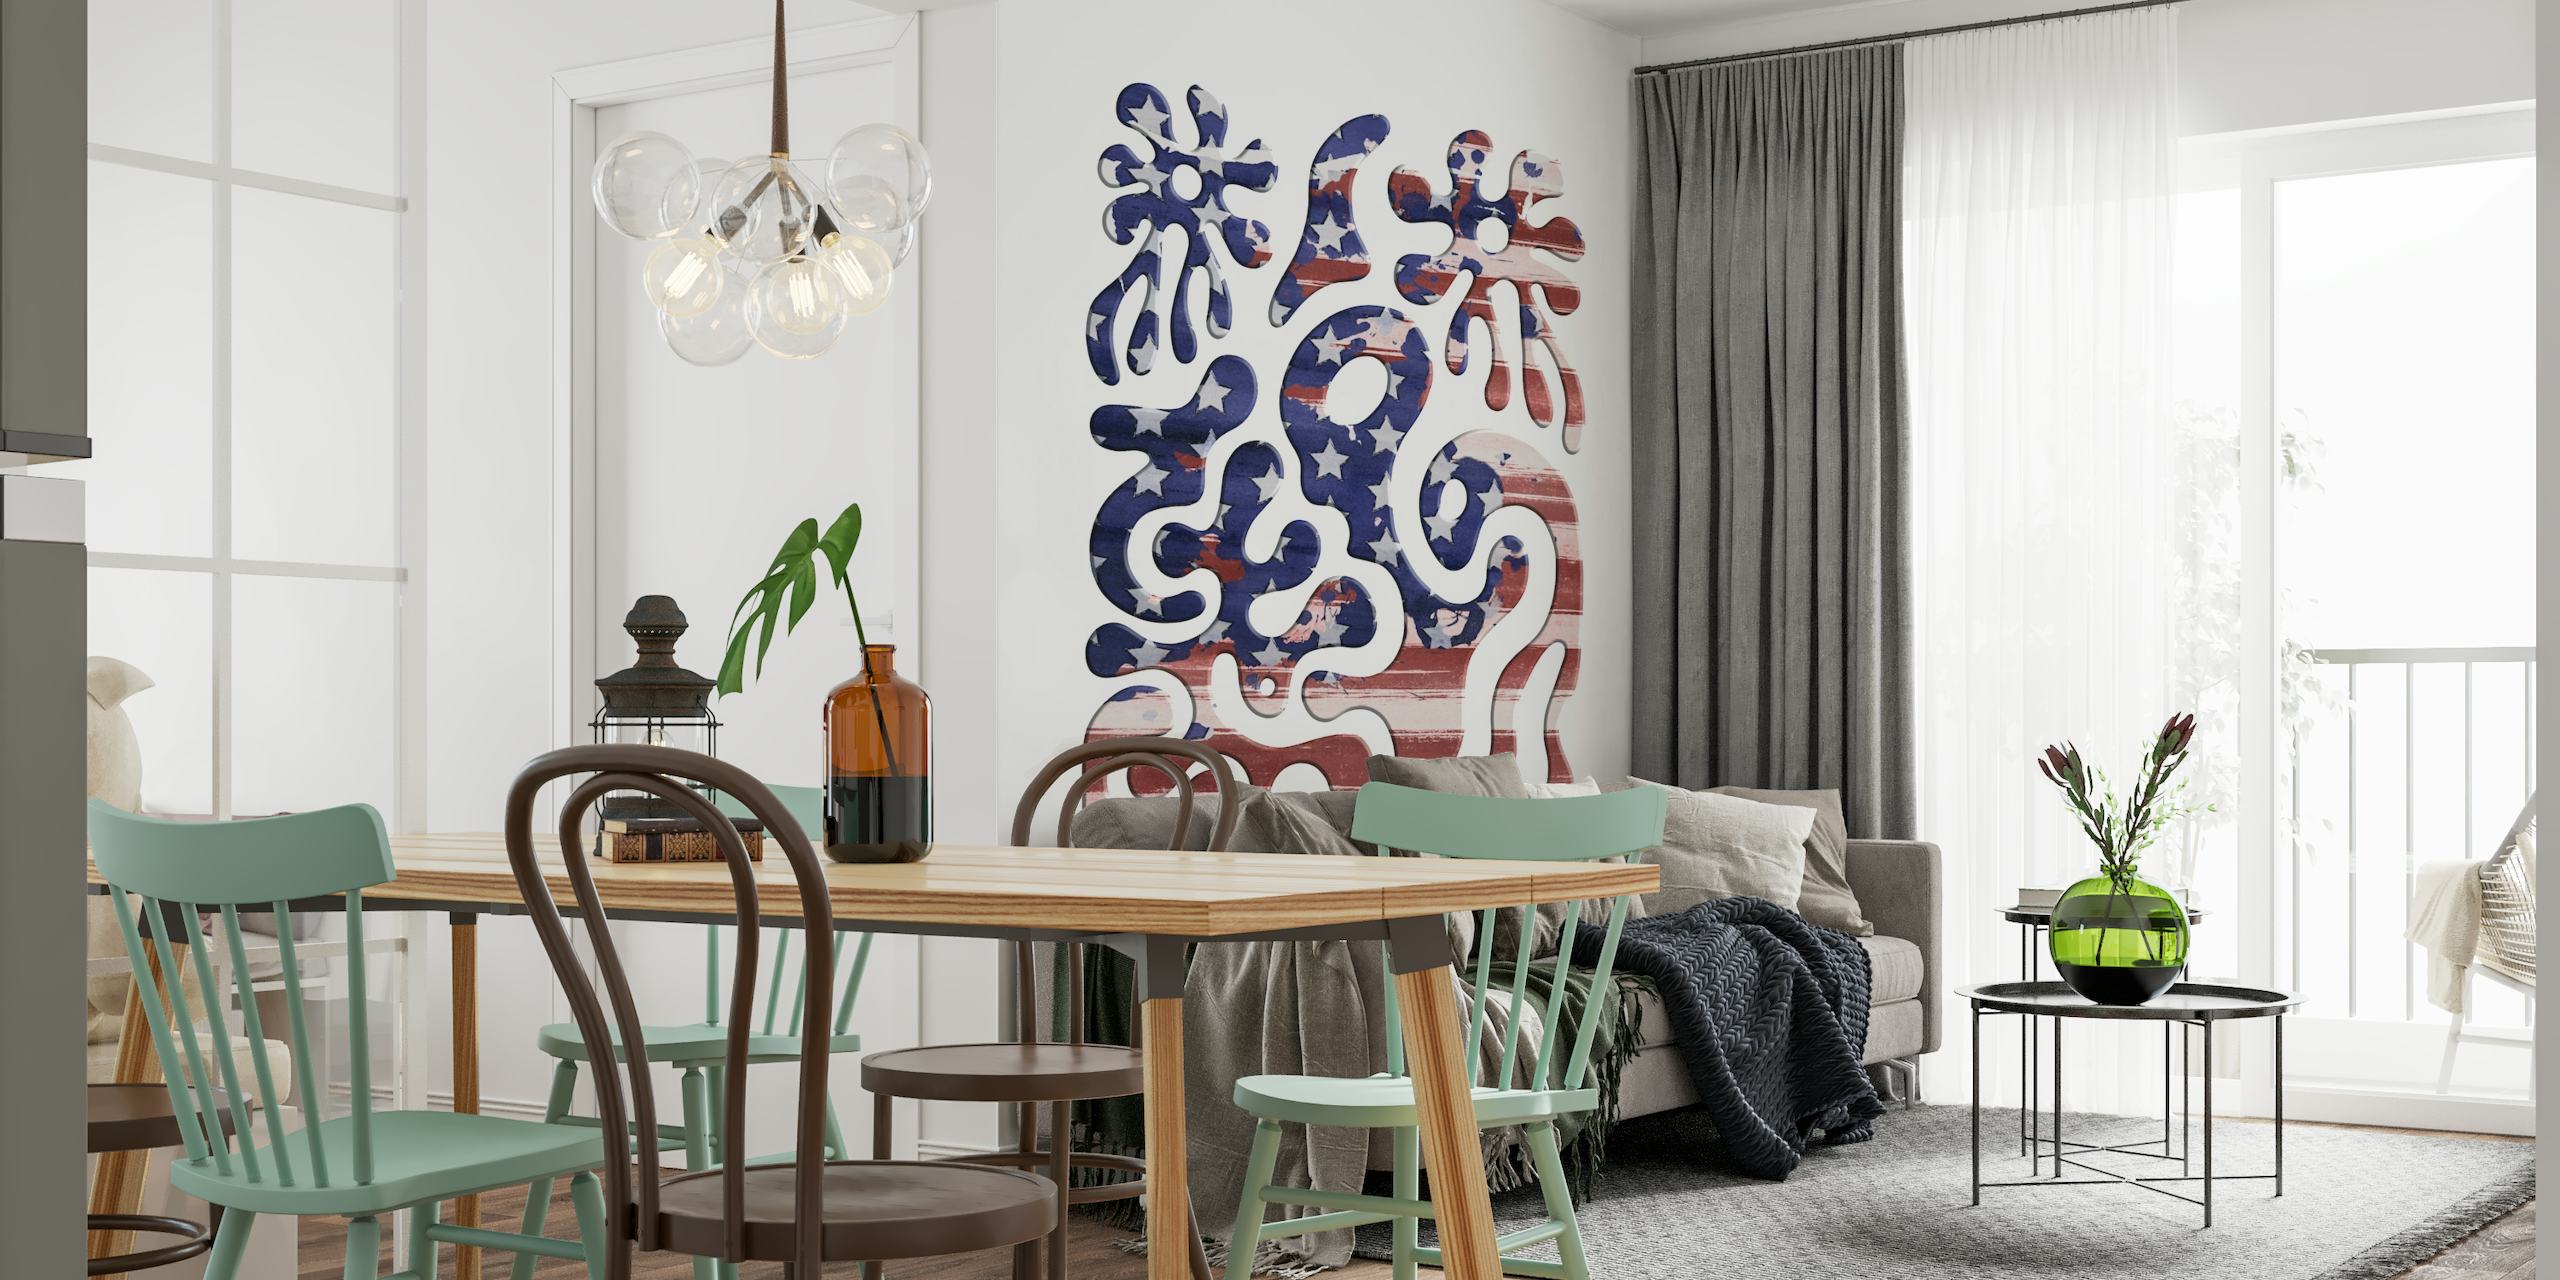 Apstraktni zidni mural s apstraktnim uzorcima inspiriranim kozmikom u nijansama plave i crvene.